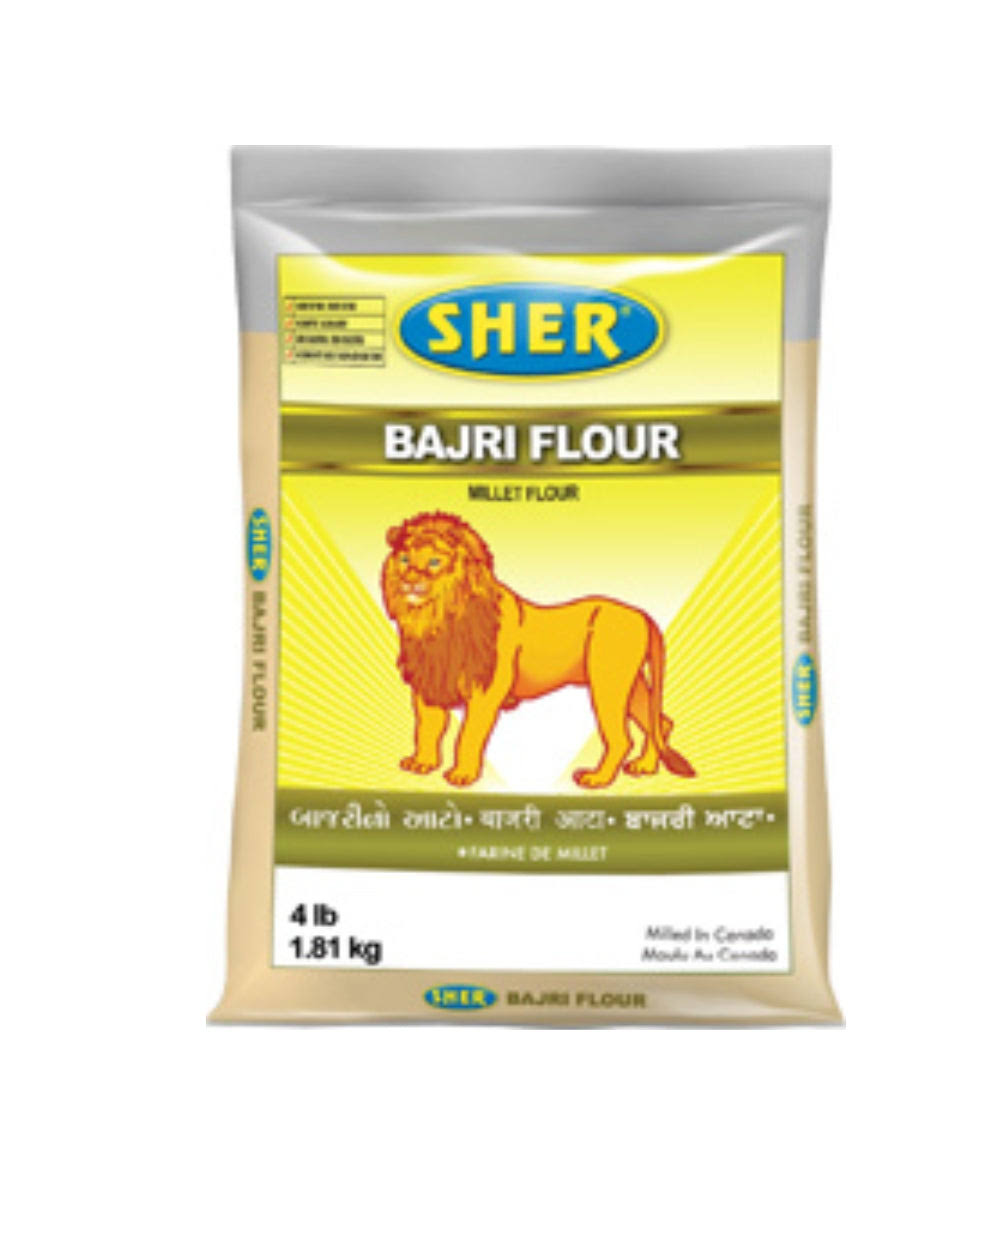 Sher Flour Bajri (Millet Flour) 1.81 kg